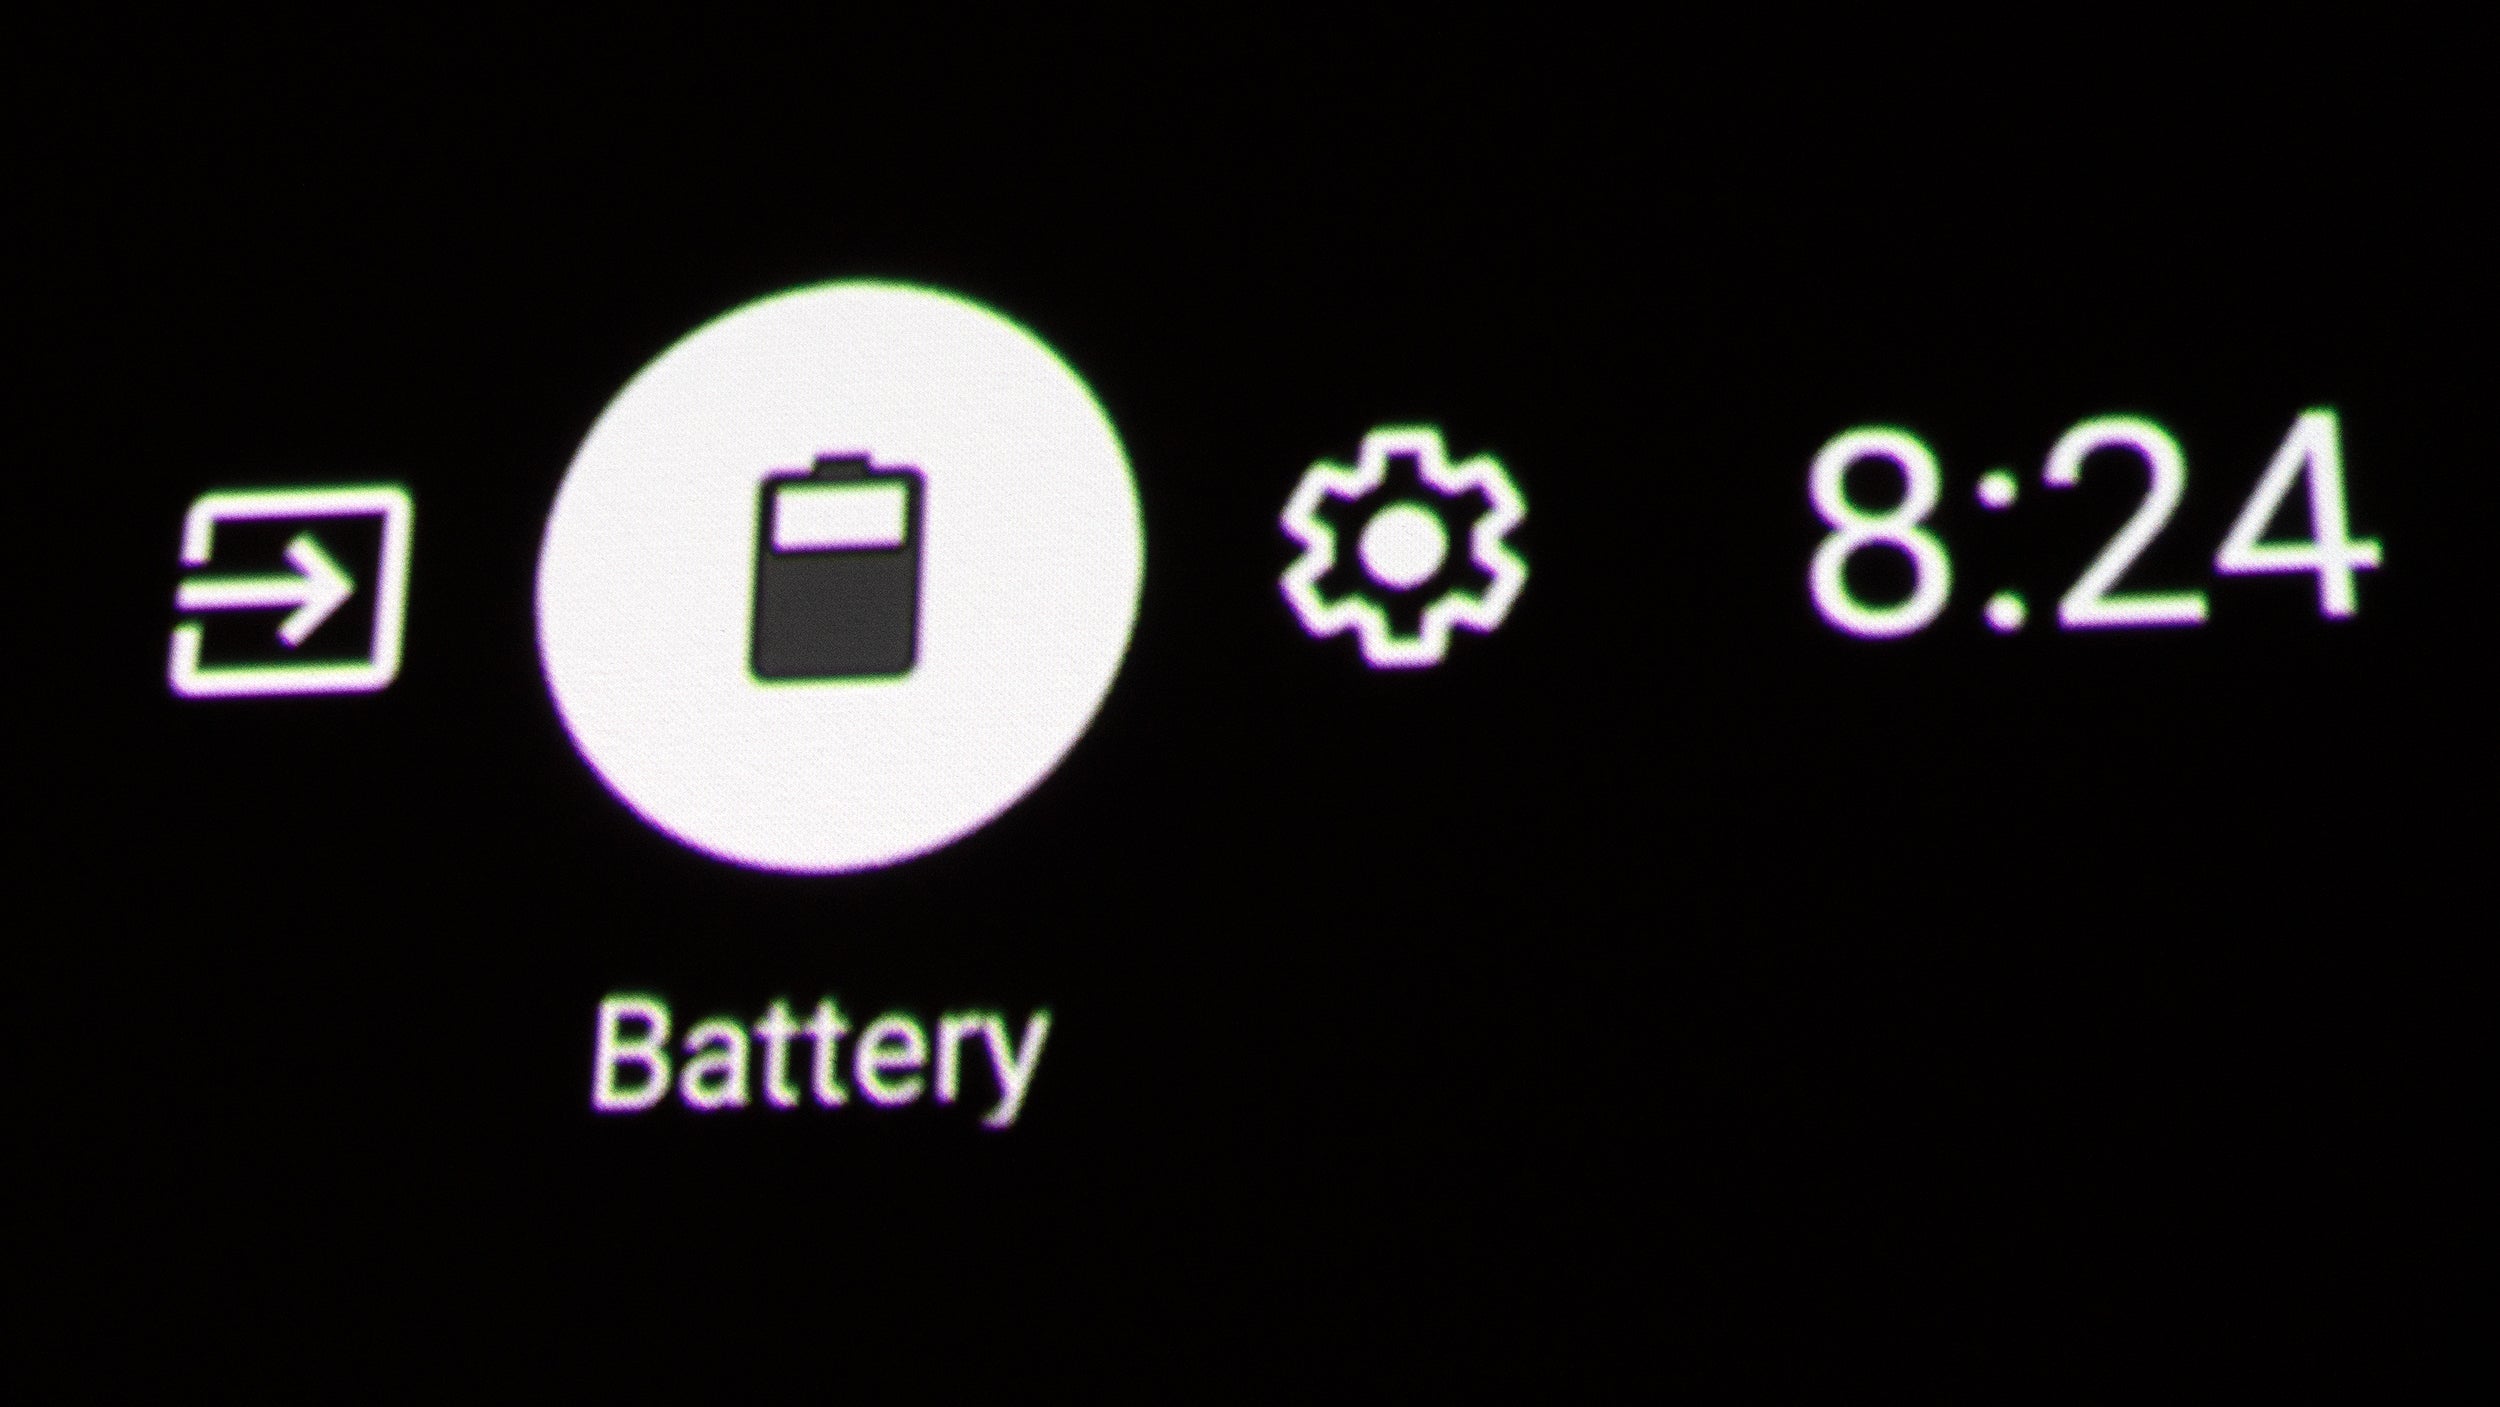 The XGIMI Halo+ relies on Android TV's vague battery metre. (Photo: Andrew Liszewski | Gizmodo)